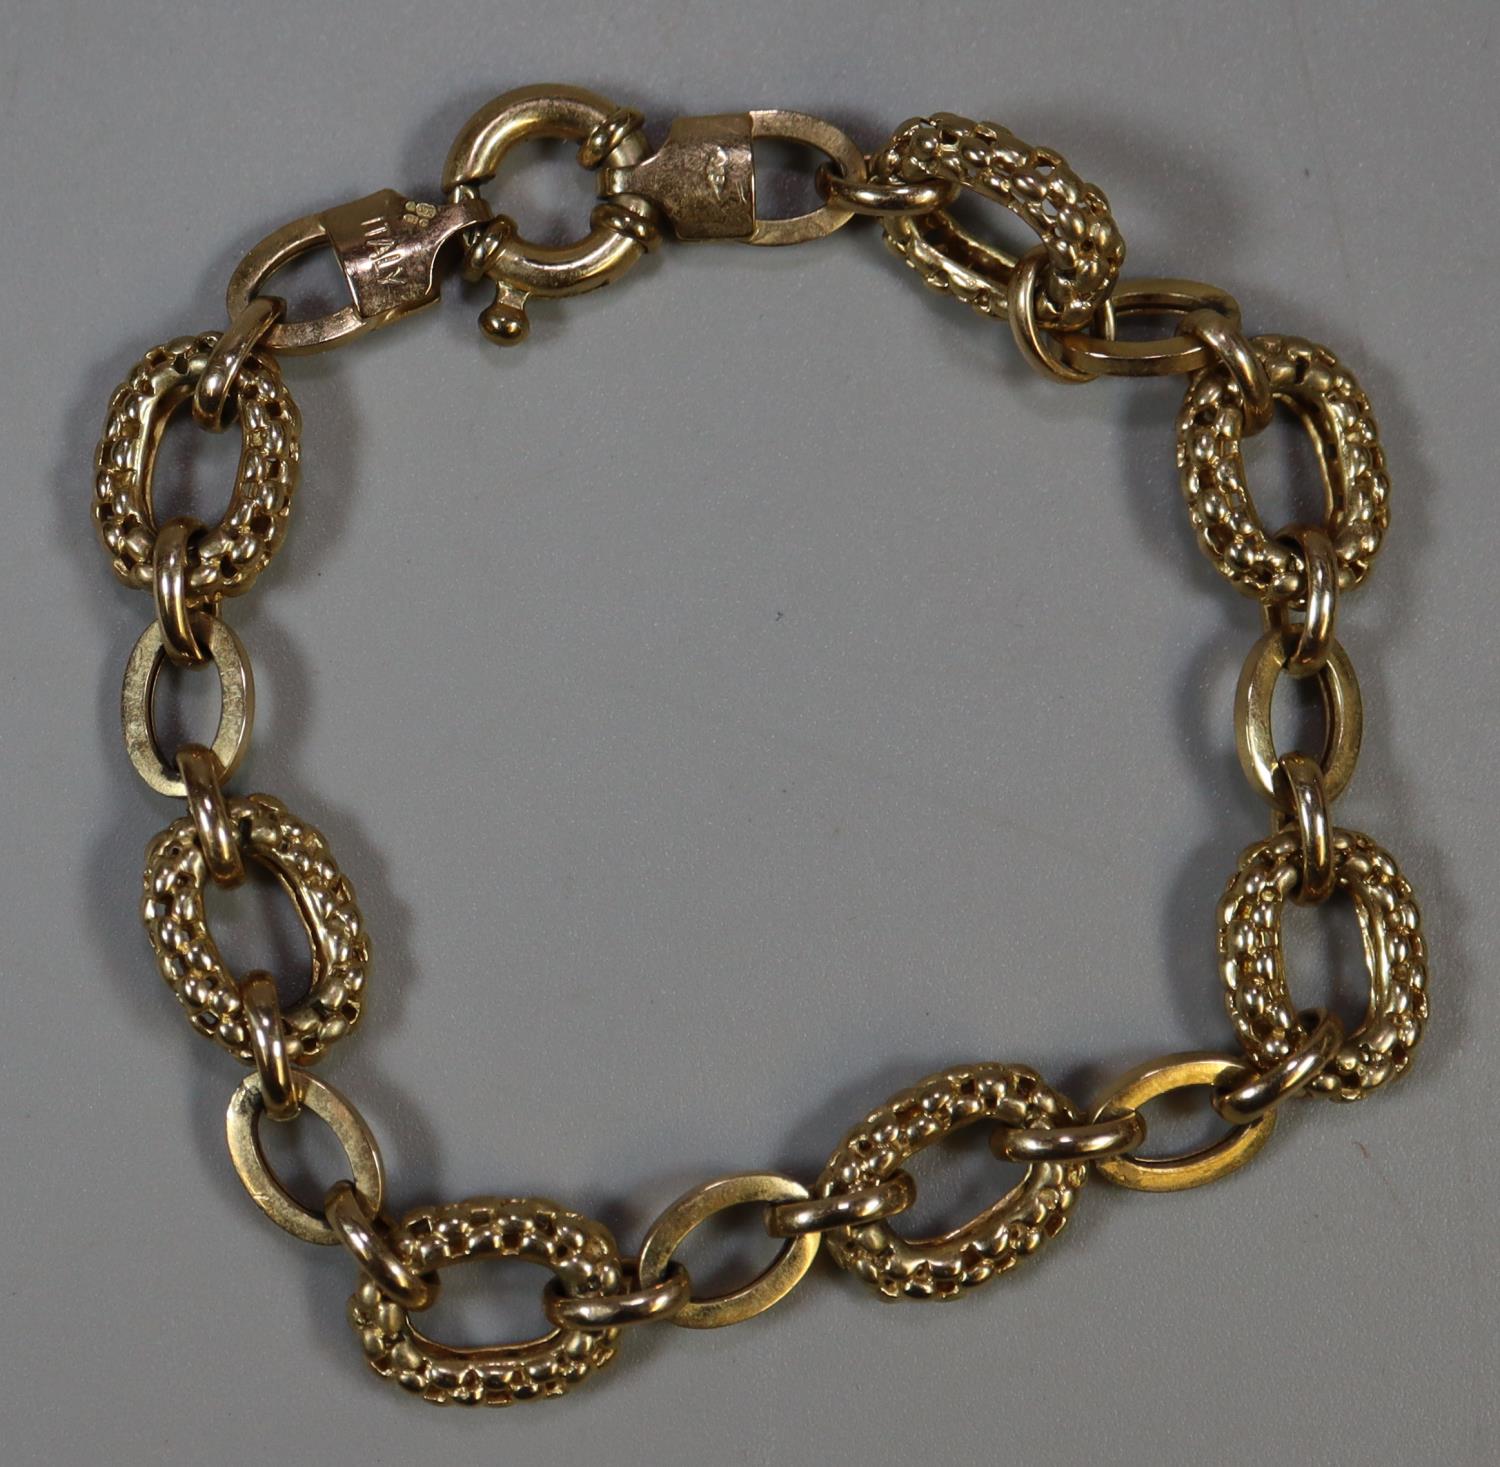 A 9ct gold bracelet. Approx weight 8.7 grams. (B.P. 21% + VAT)